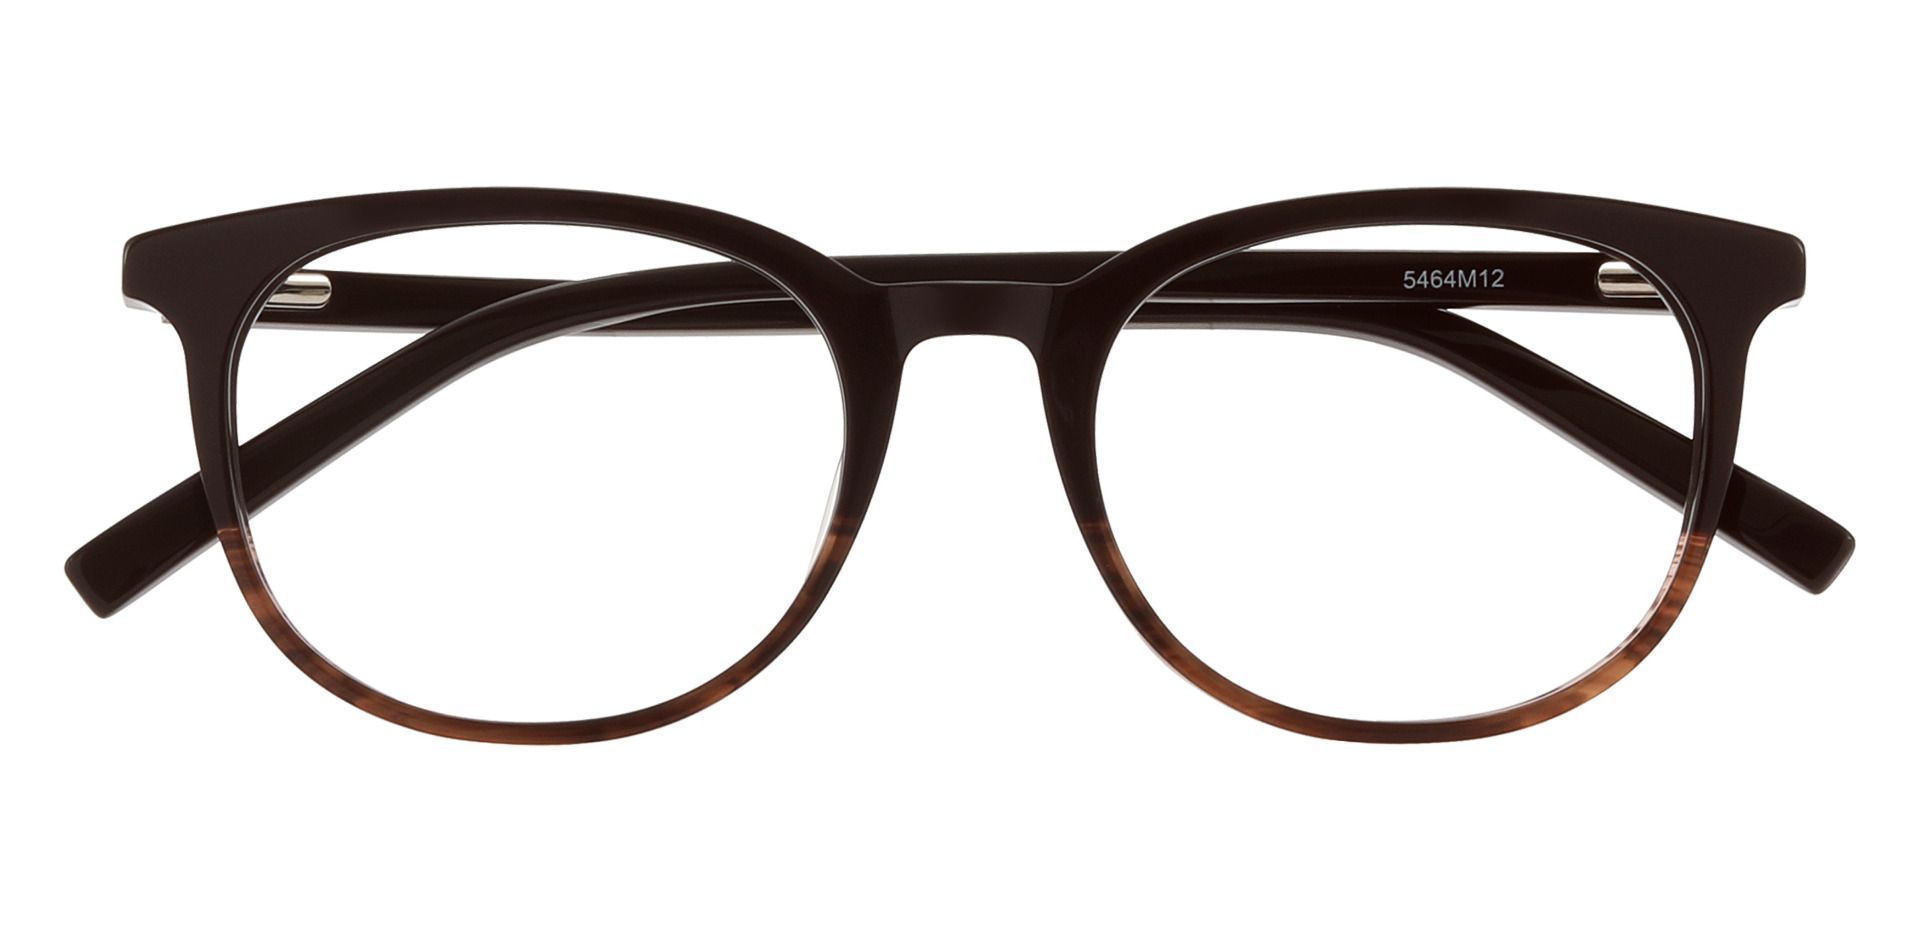 Raquel Oval Prescription Glasses - Brown